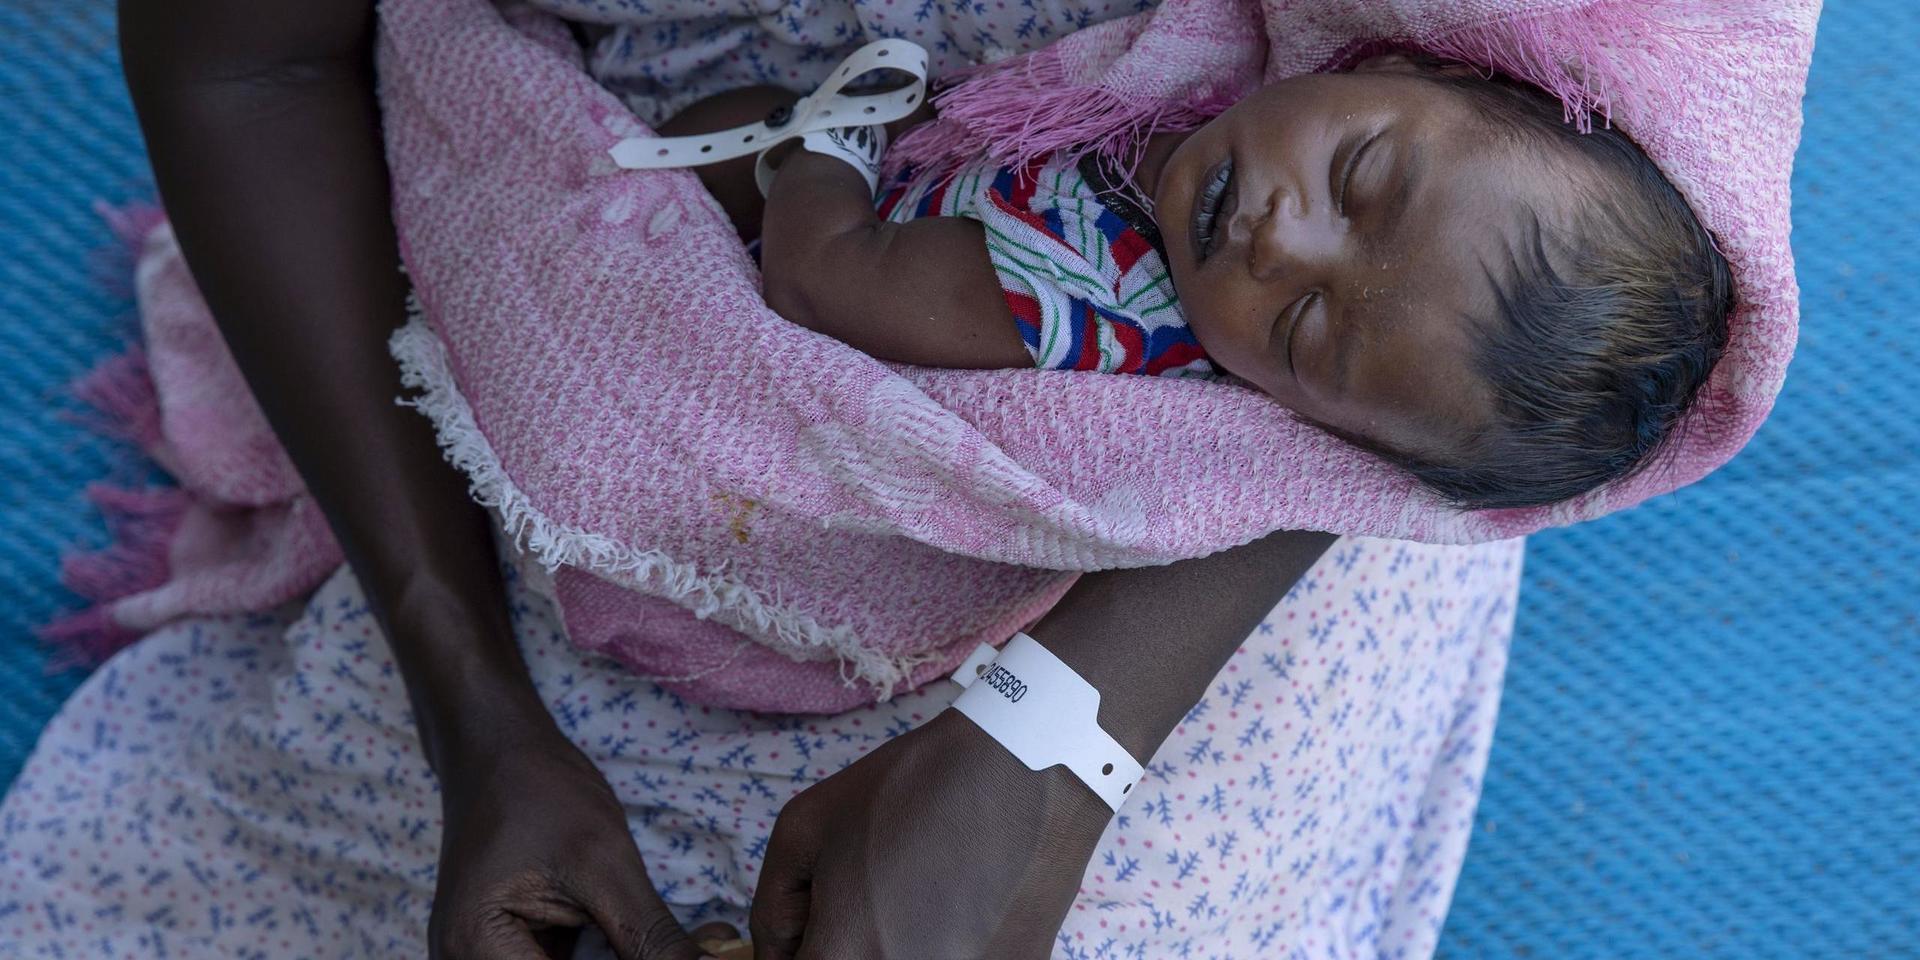 Tjugofemåriga Terhas Tsfa var höggravid när hon flydde striderna i Tigray, och fick föda sitt barn vid vägkanten. Nu befinner hon sig i ett flyktingläger i Qadarif i östra Sudan.